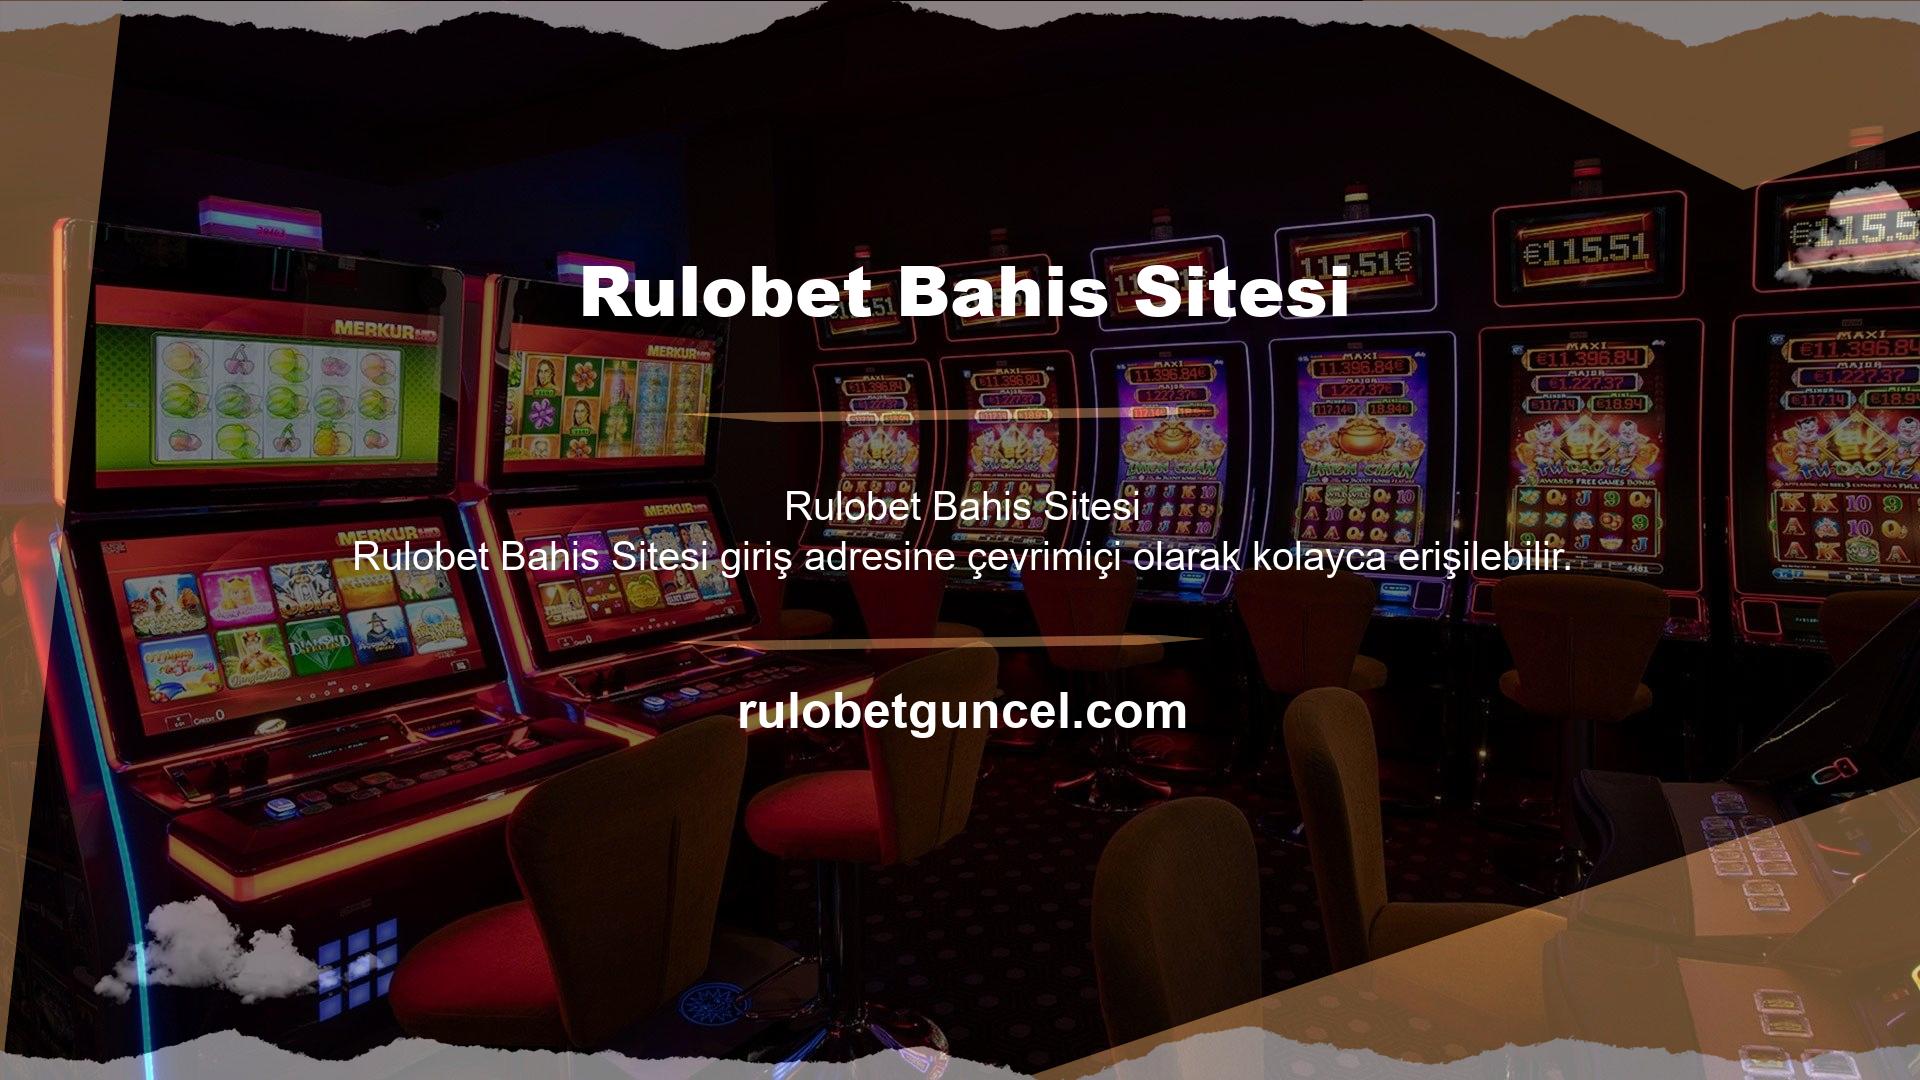 Rulobet web sitesinin adı özellikle sosyal medyada çokça duyulmaktadır